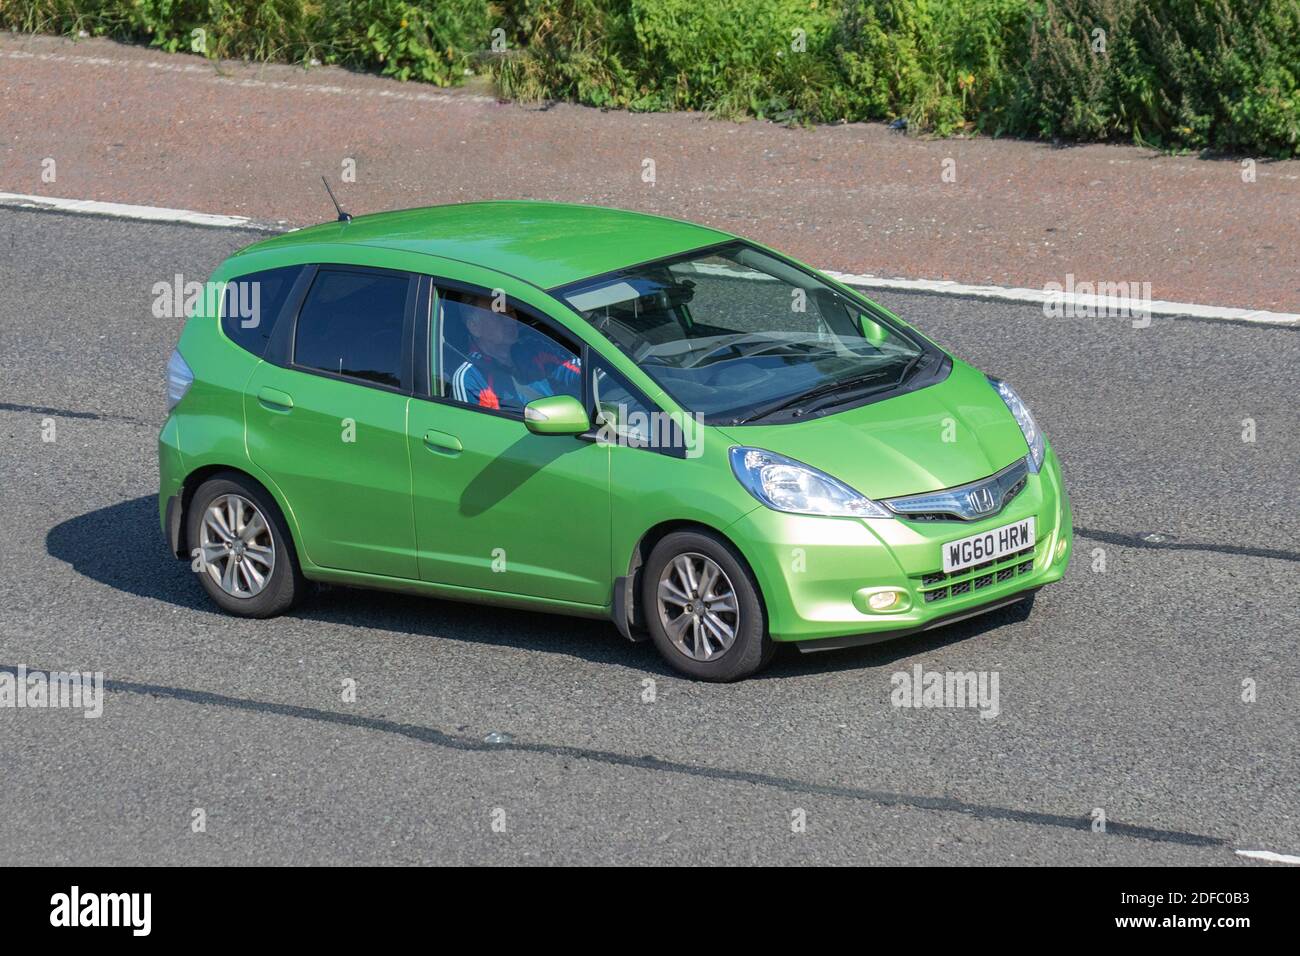 2011 vert Honda Jazz HS IMA CVT ; circulation automobile, véhicules en mouvement, voitures, véhicule roulant sur les routes du Royaume-Uni, moteurs, conduite sur l'autoroute M6 réseau routier du Royaume-Uni. Banque D'Images